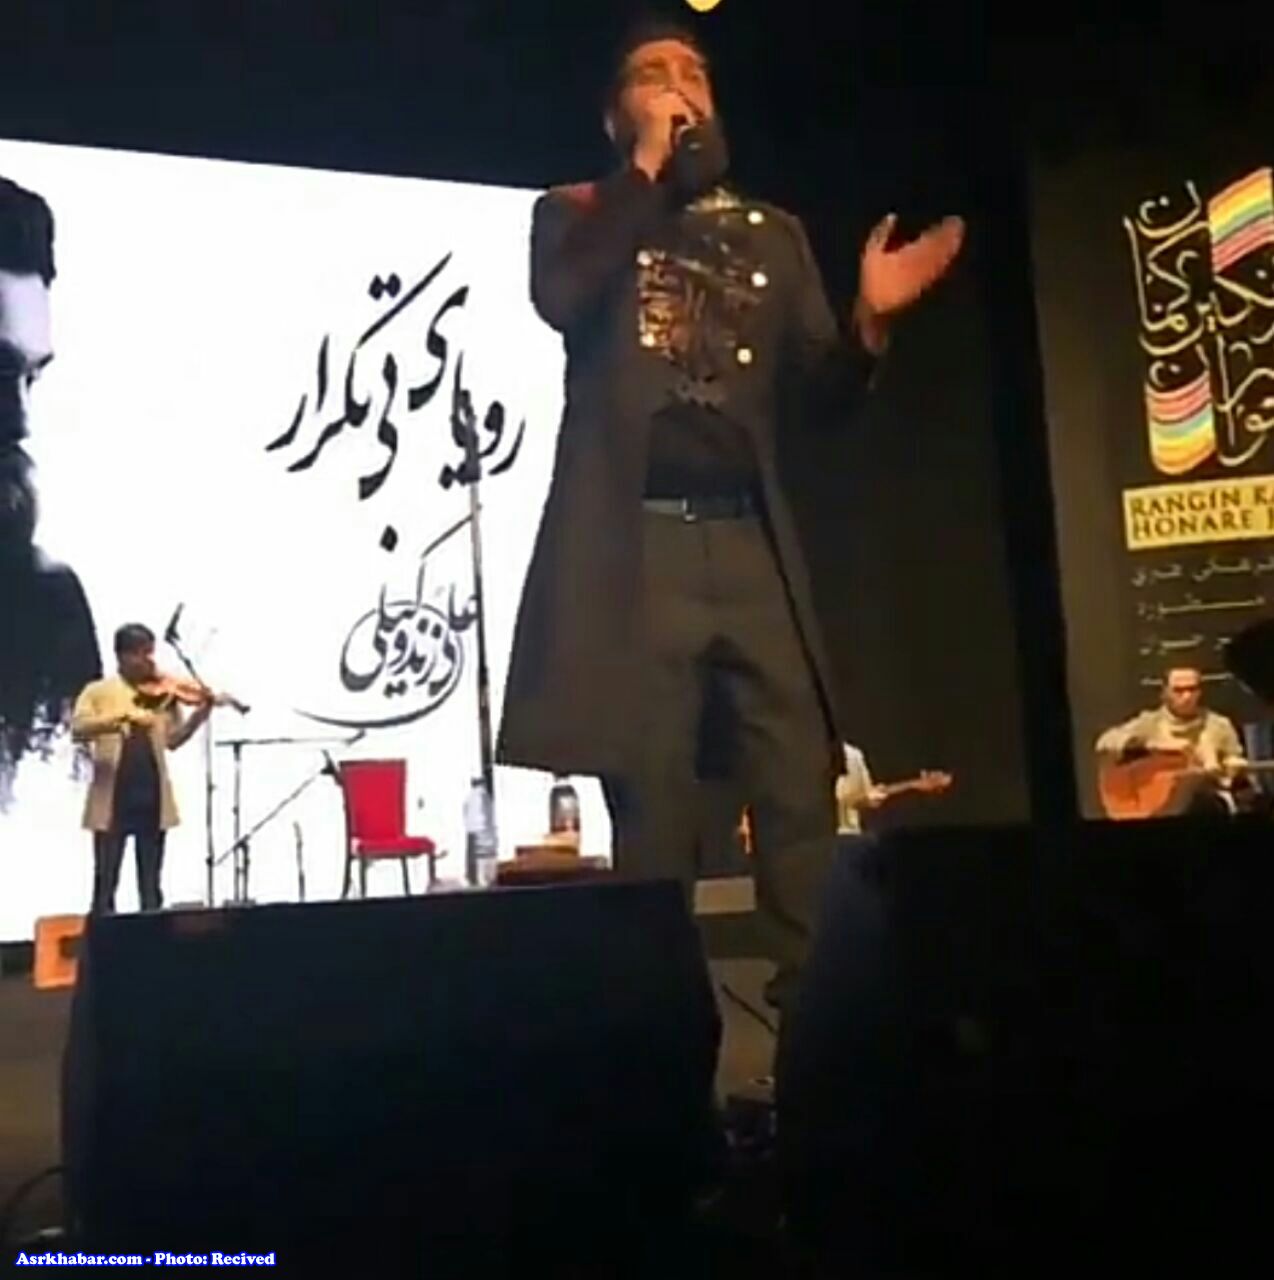 عكس: لباس عجيب و غريب خواننده مشهور ايراني در كنسرت